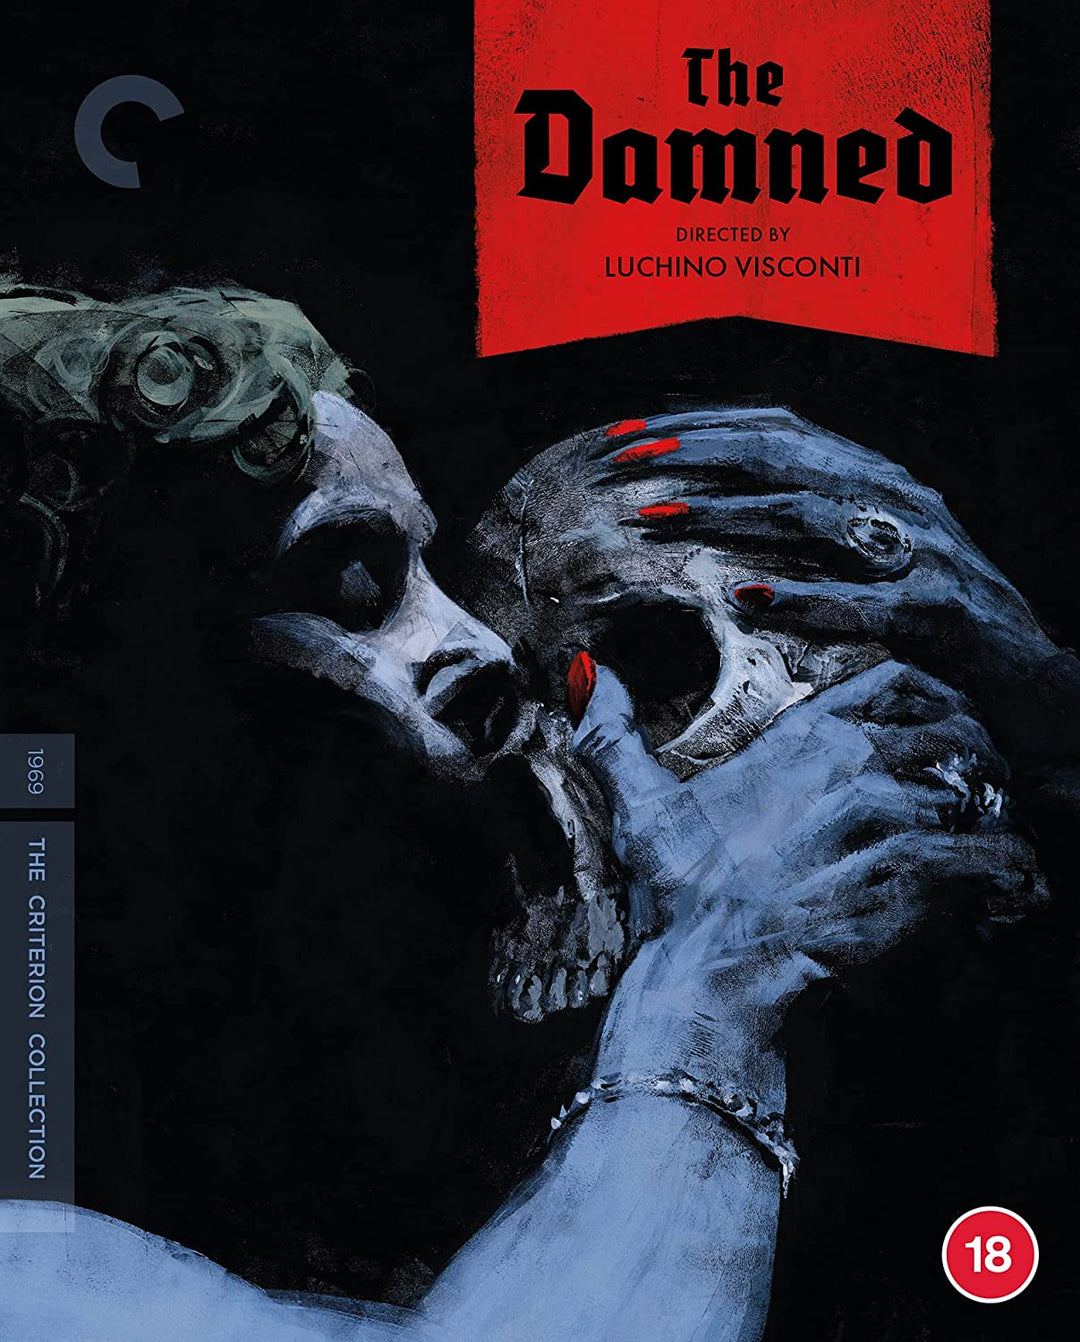 The Damned (Criterion Collection) Nur Großbritannien [Blu-ray]